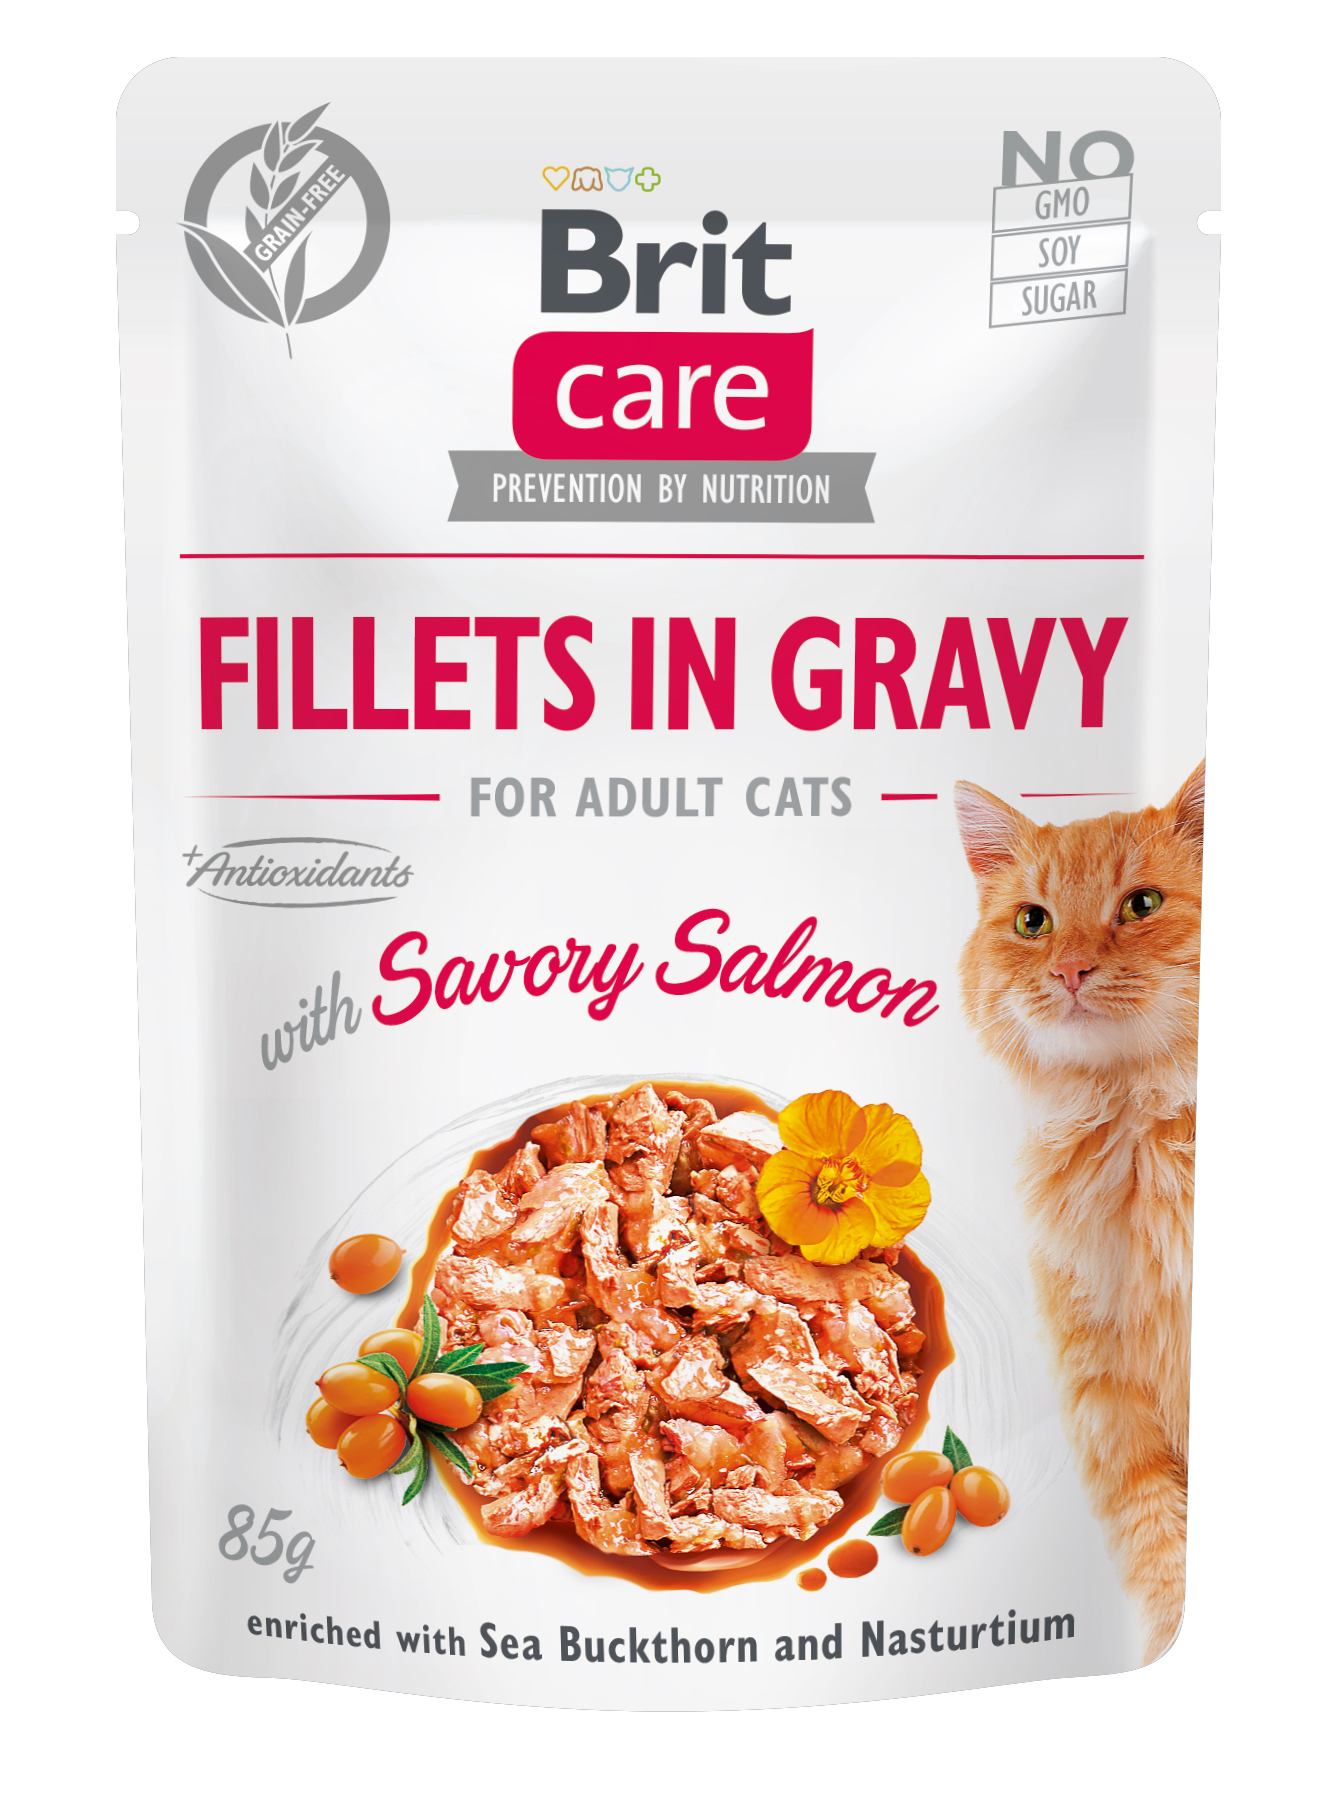 Беззерновой влажный корм для кошек Brit Care Cat pouch, пикантный лосось, 85 г - фото 1